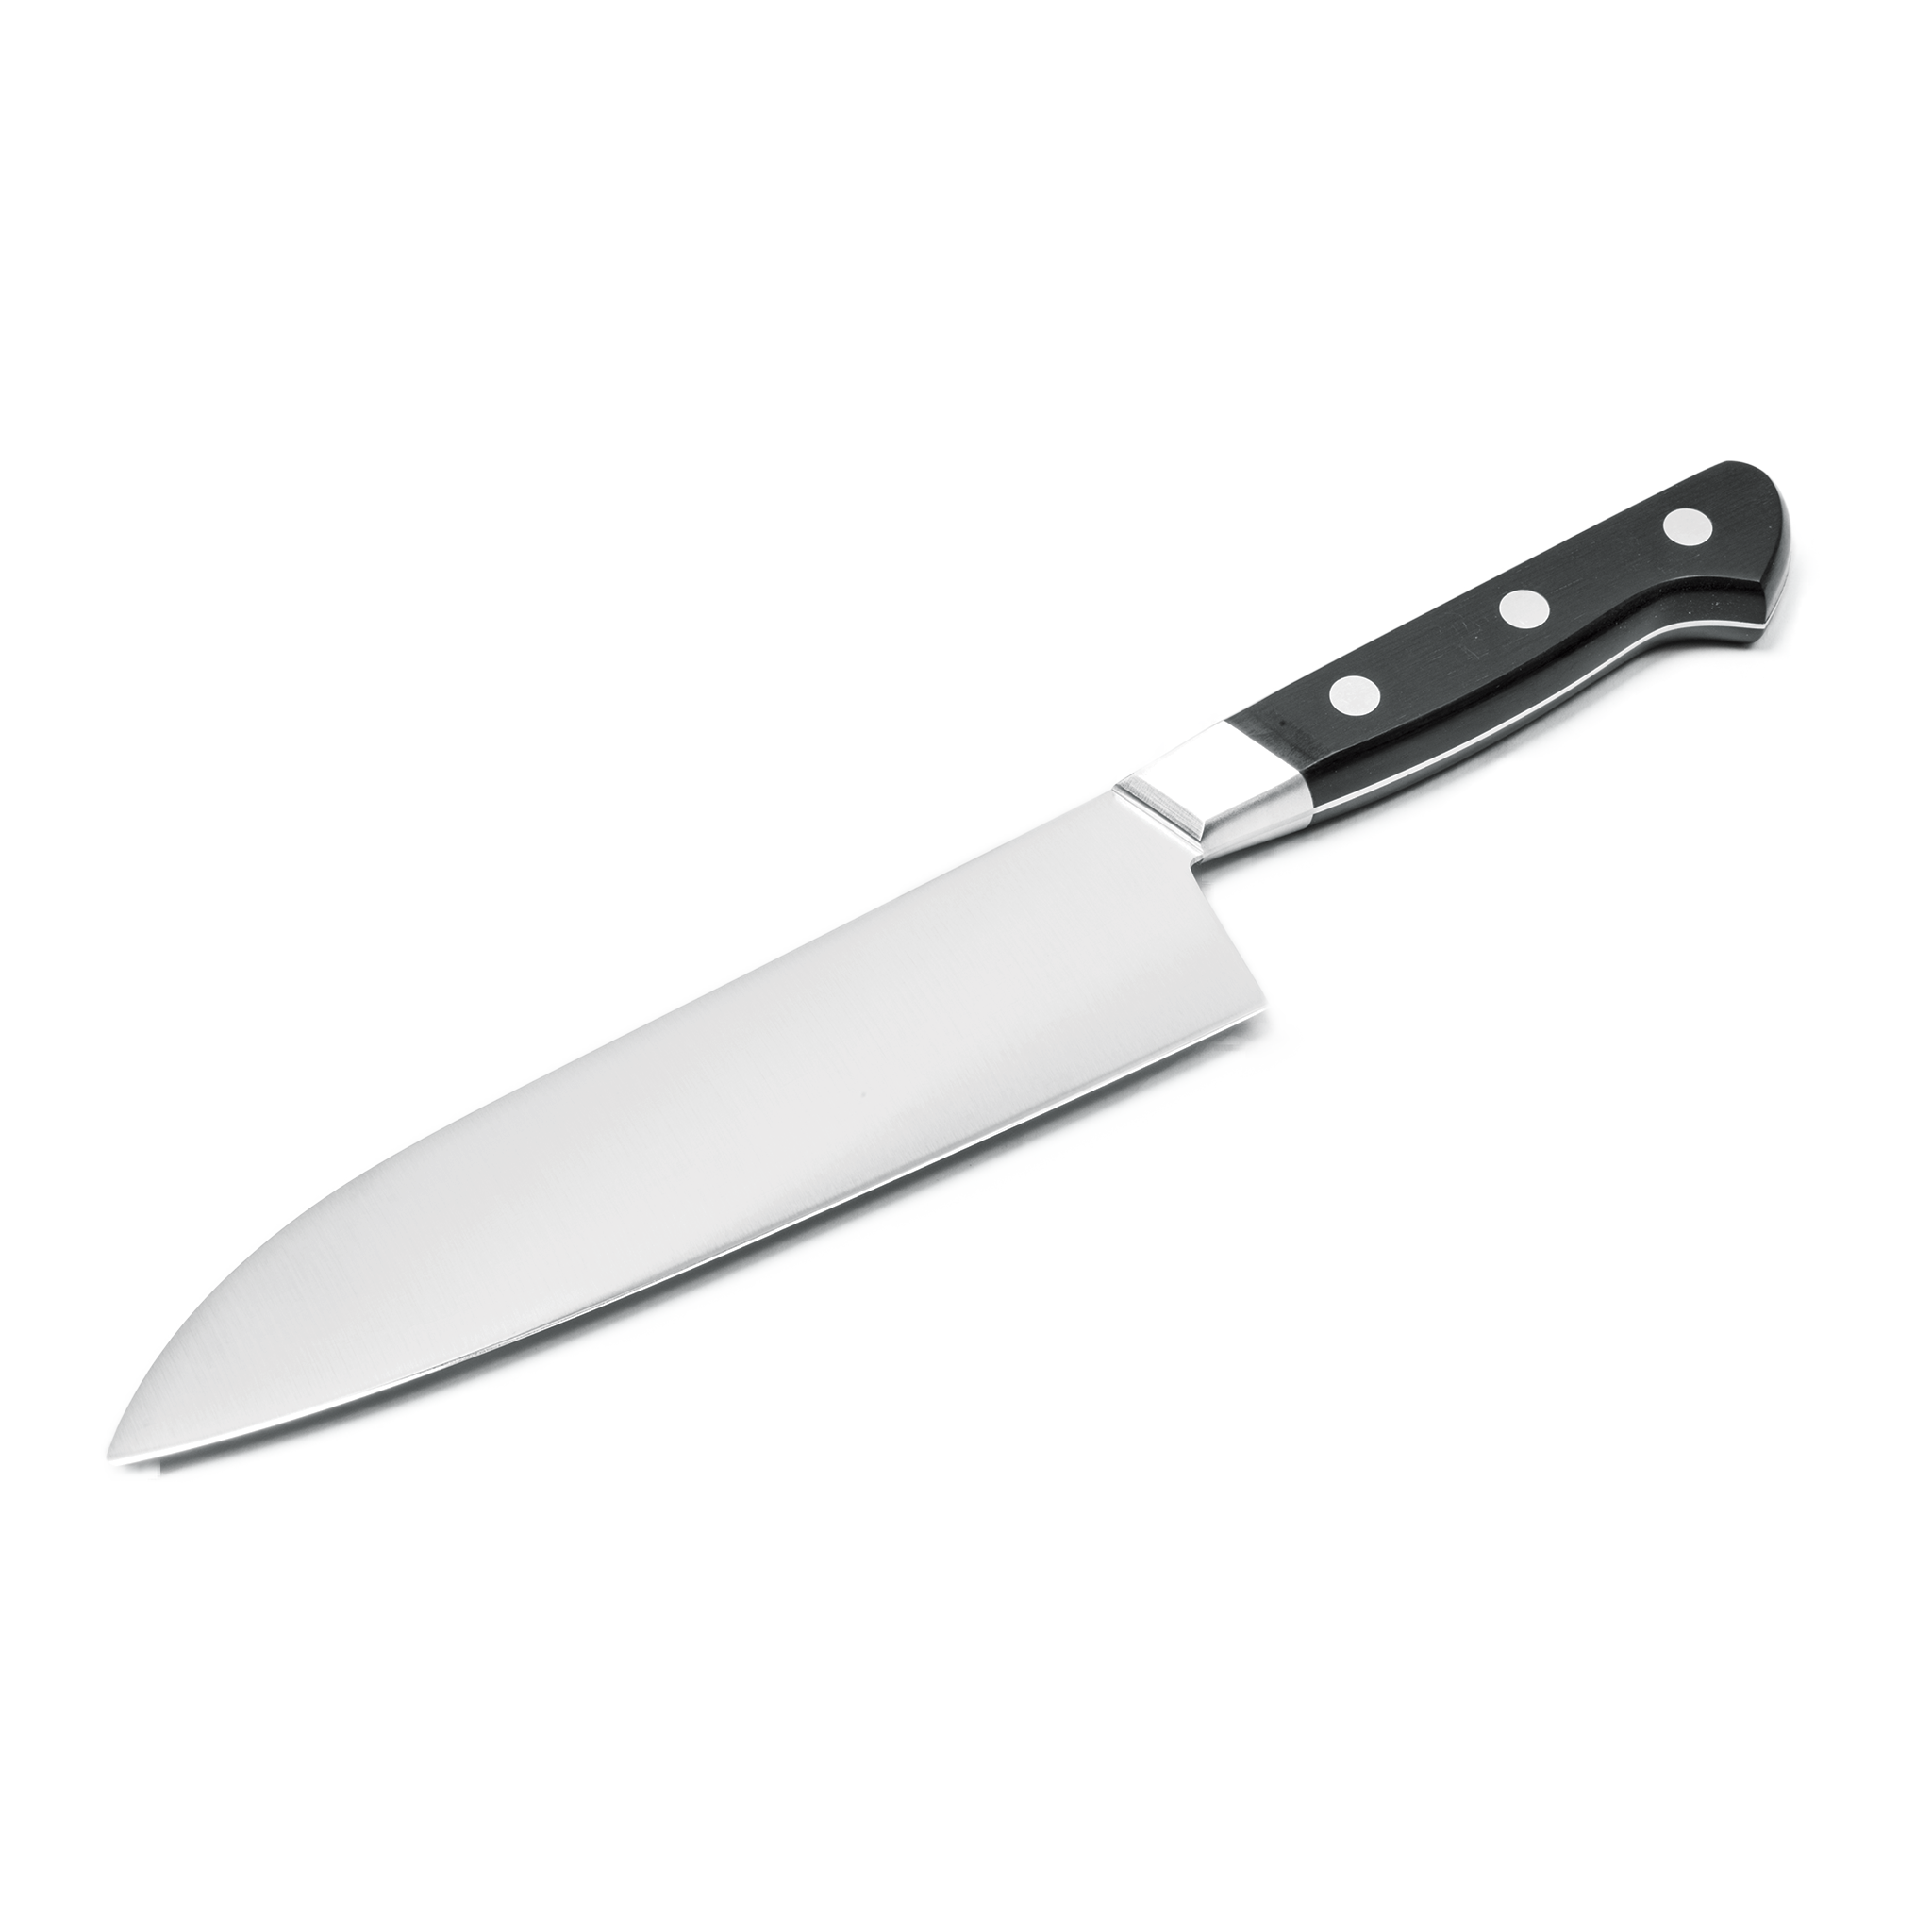 Knife Blade PNG File